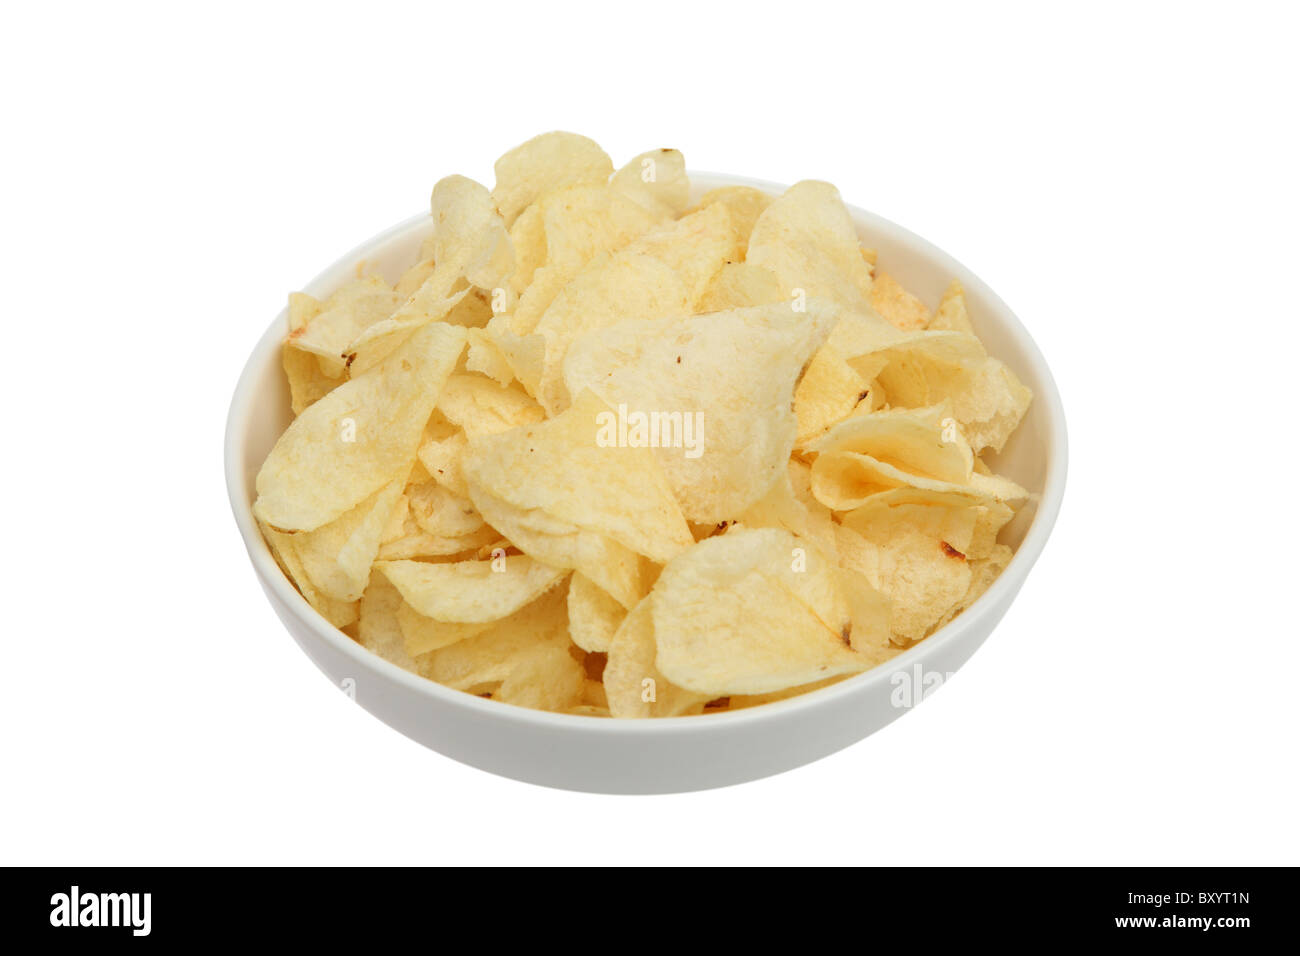 Patatine fritte in un recipiente su sfondo bianco Foto Stock